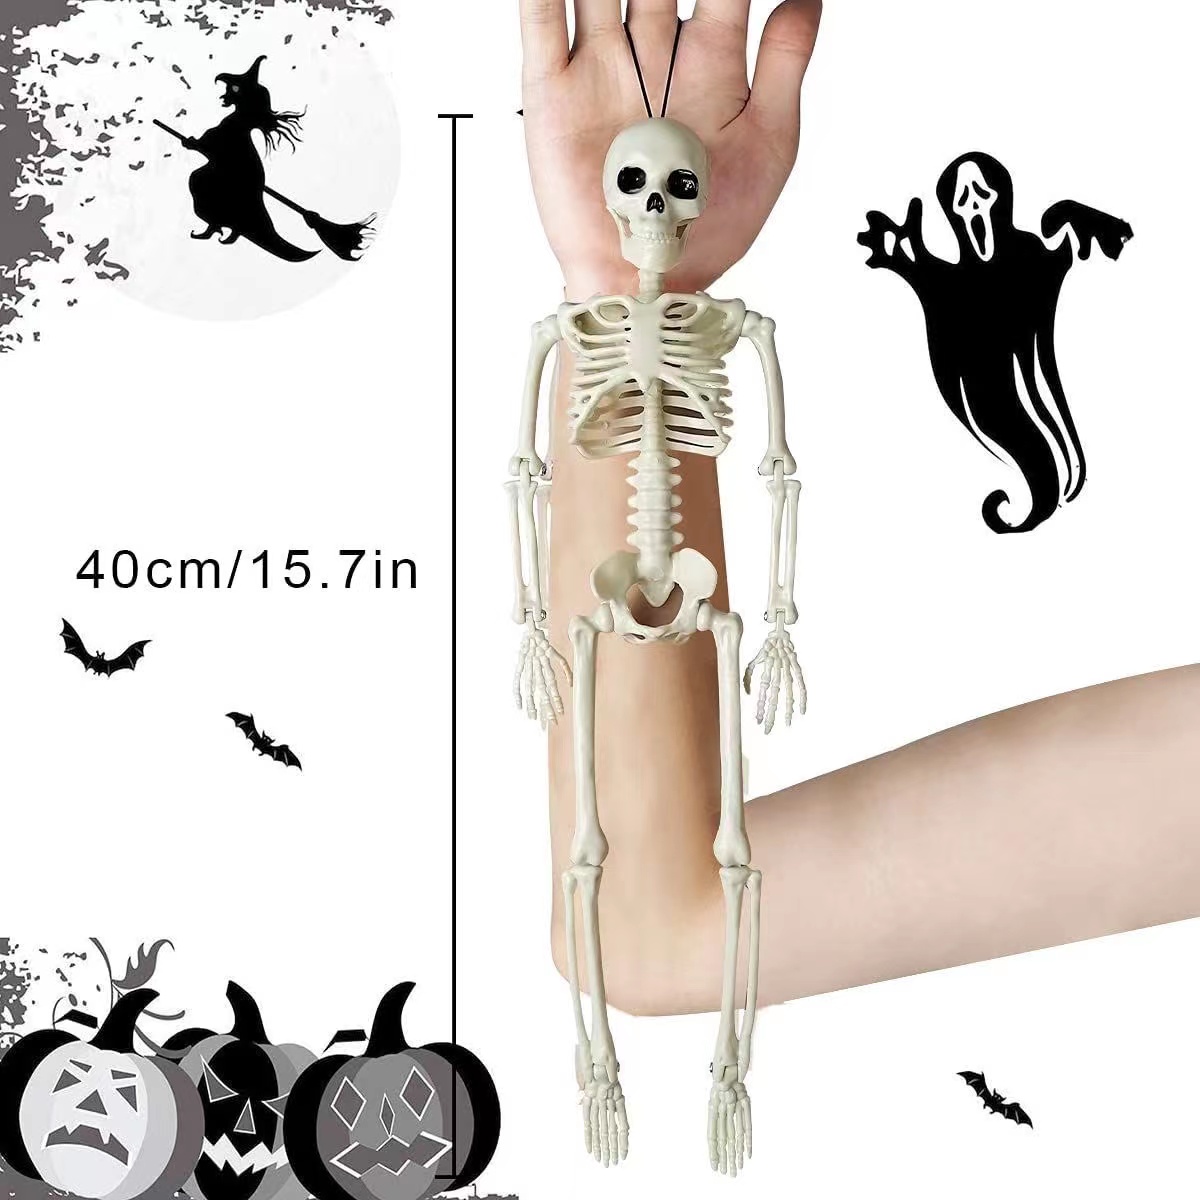 骨架骷髅骨头架人体骨骼模型医学四肢可拆40cm架关节可活动万圣节